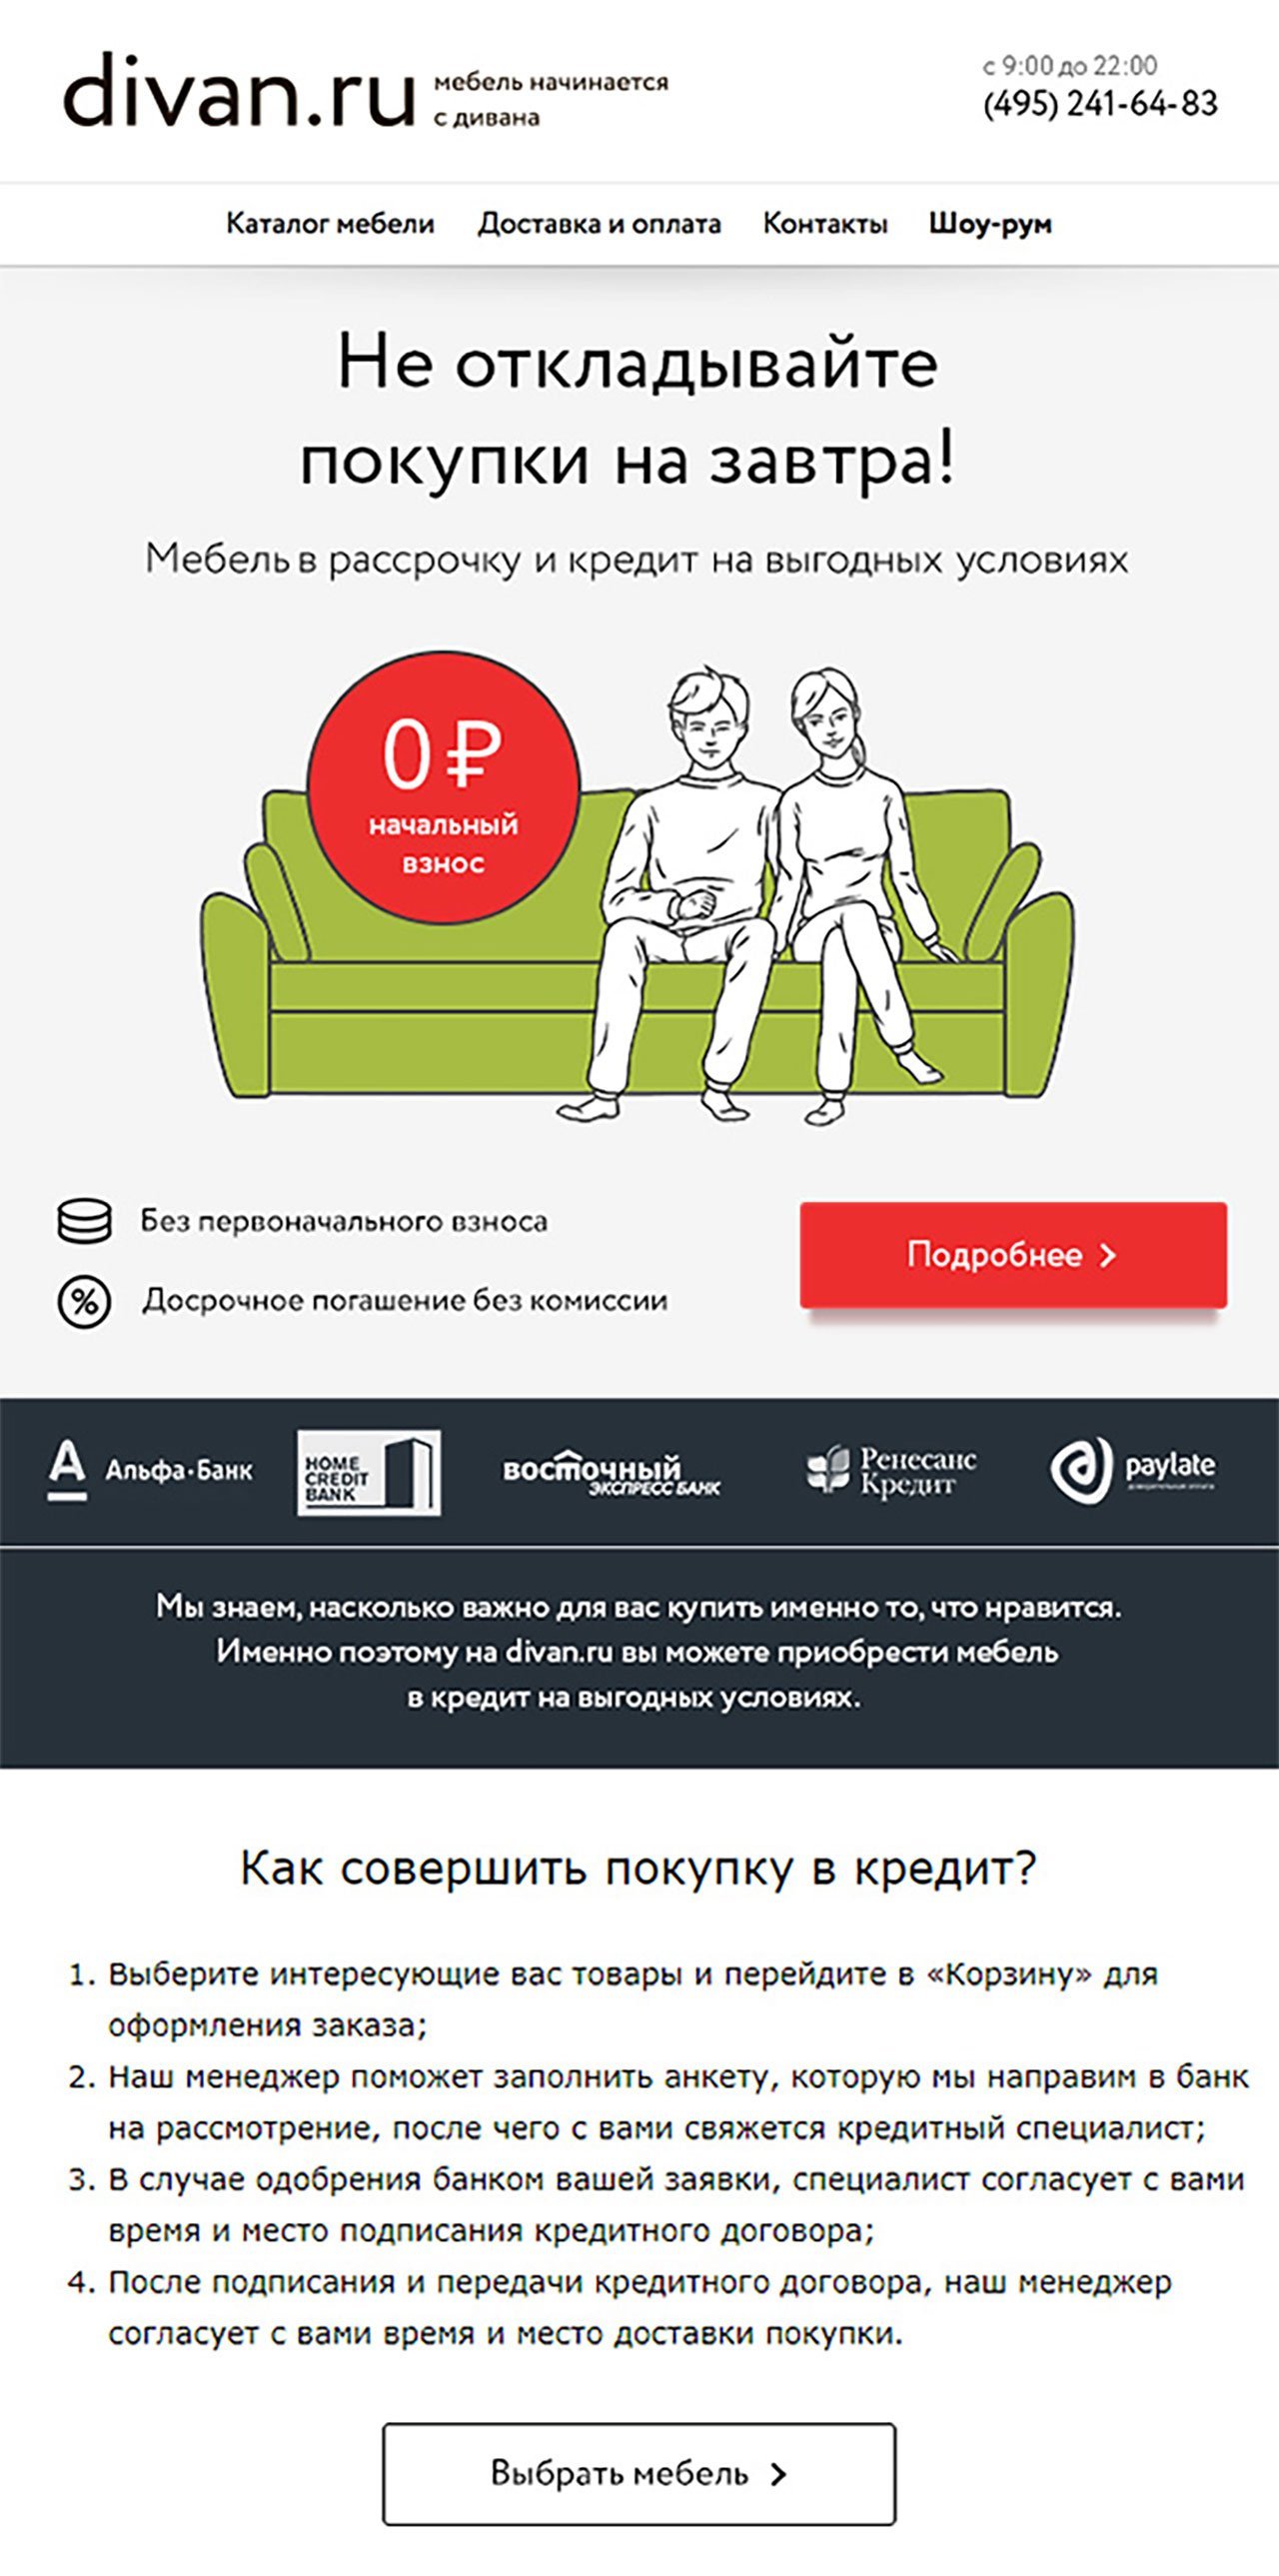 Email-рассылка divan.ru с информацией о рассрочке